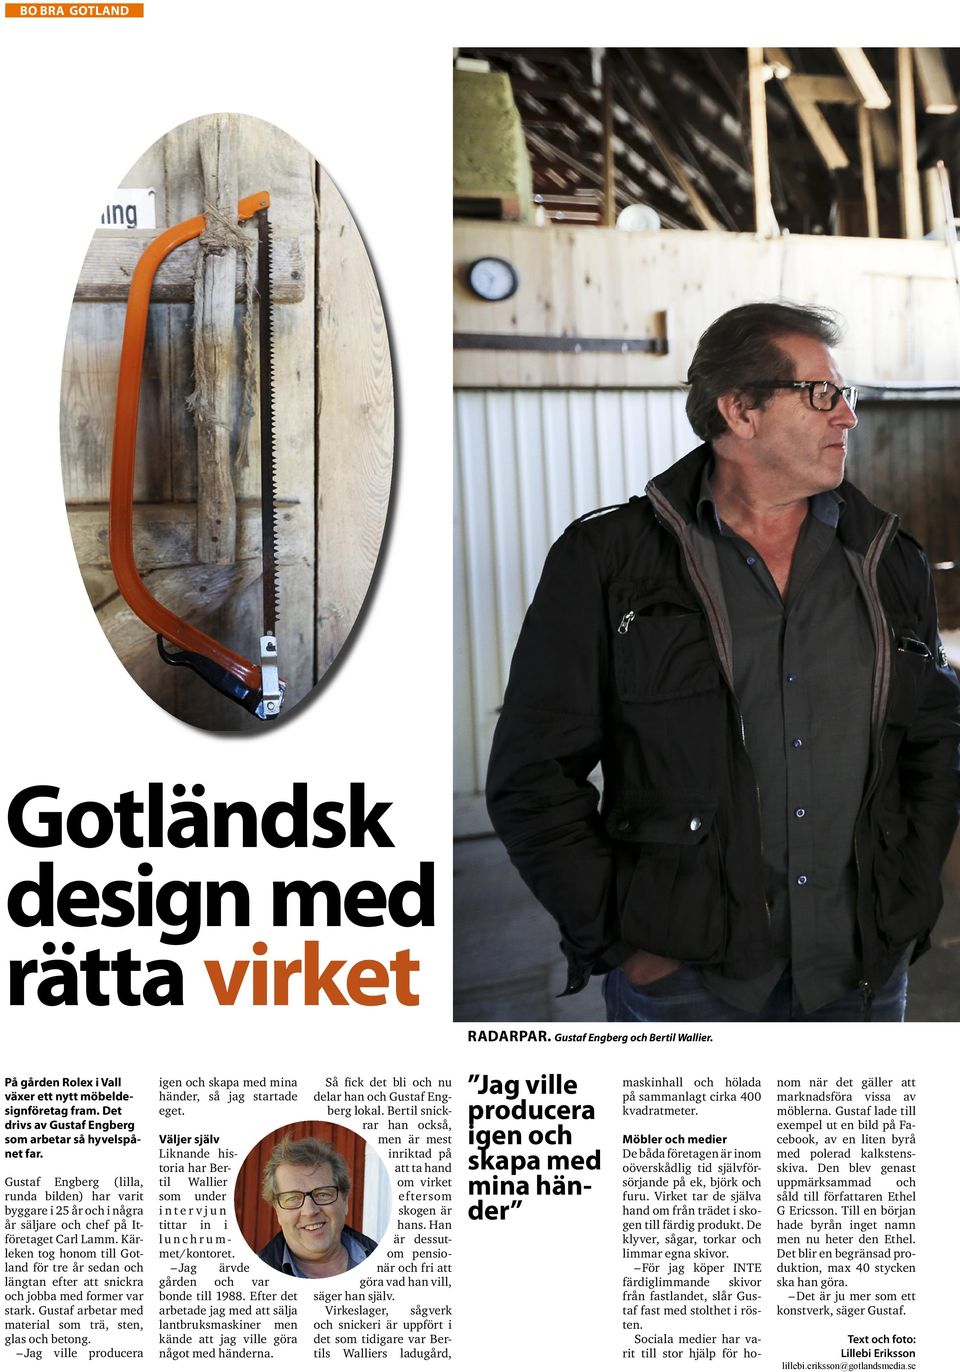 Kärleken tog honom till Gotland för tre år sedan och längtan efter att snickra och jobba med former var stark. Gustaf arbetar med material som trä, sten, glas och betong.